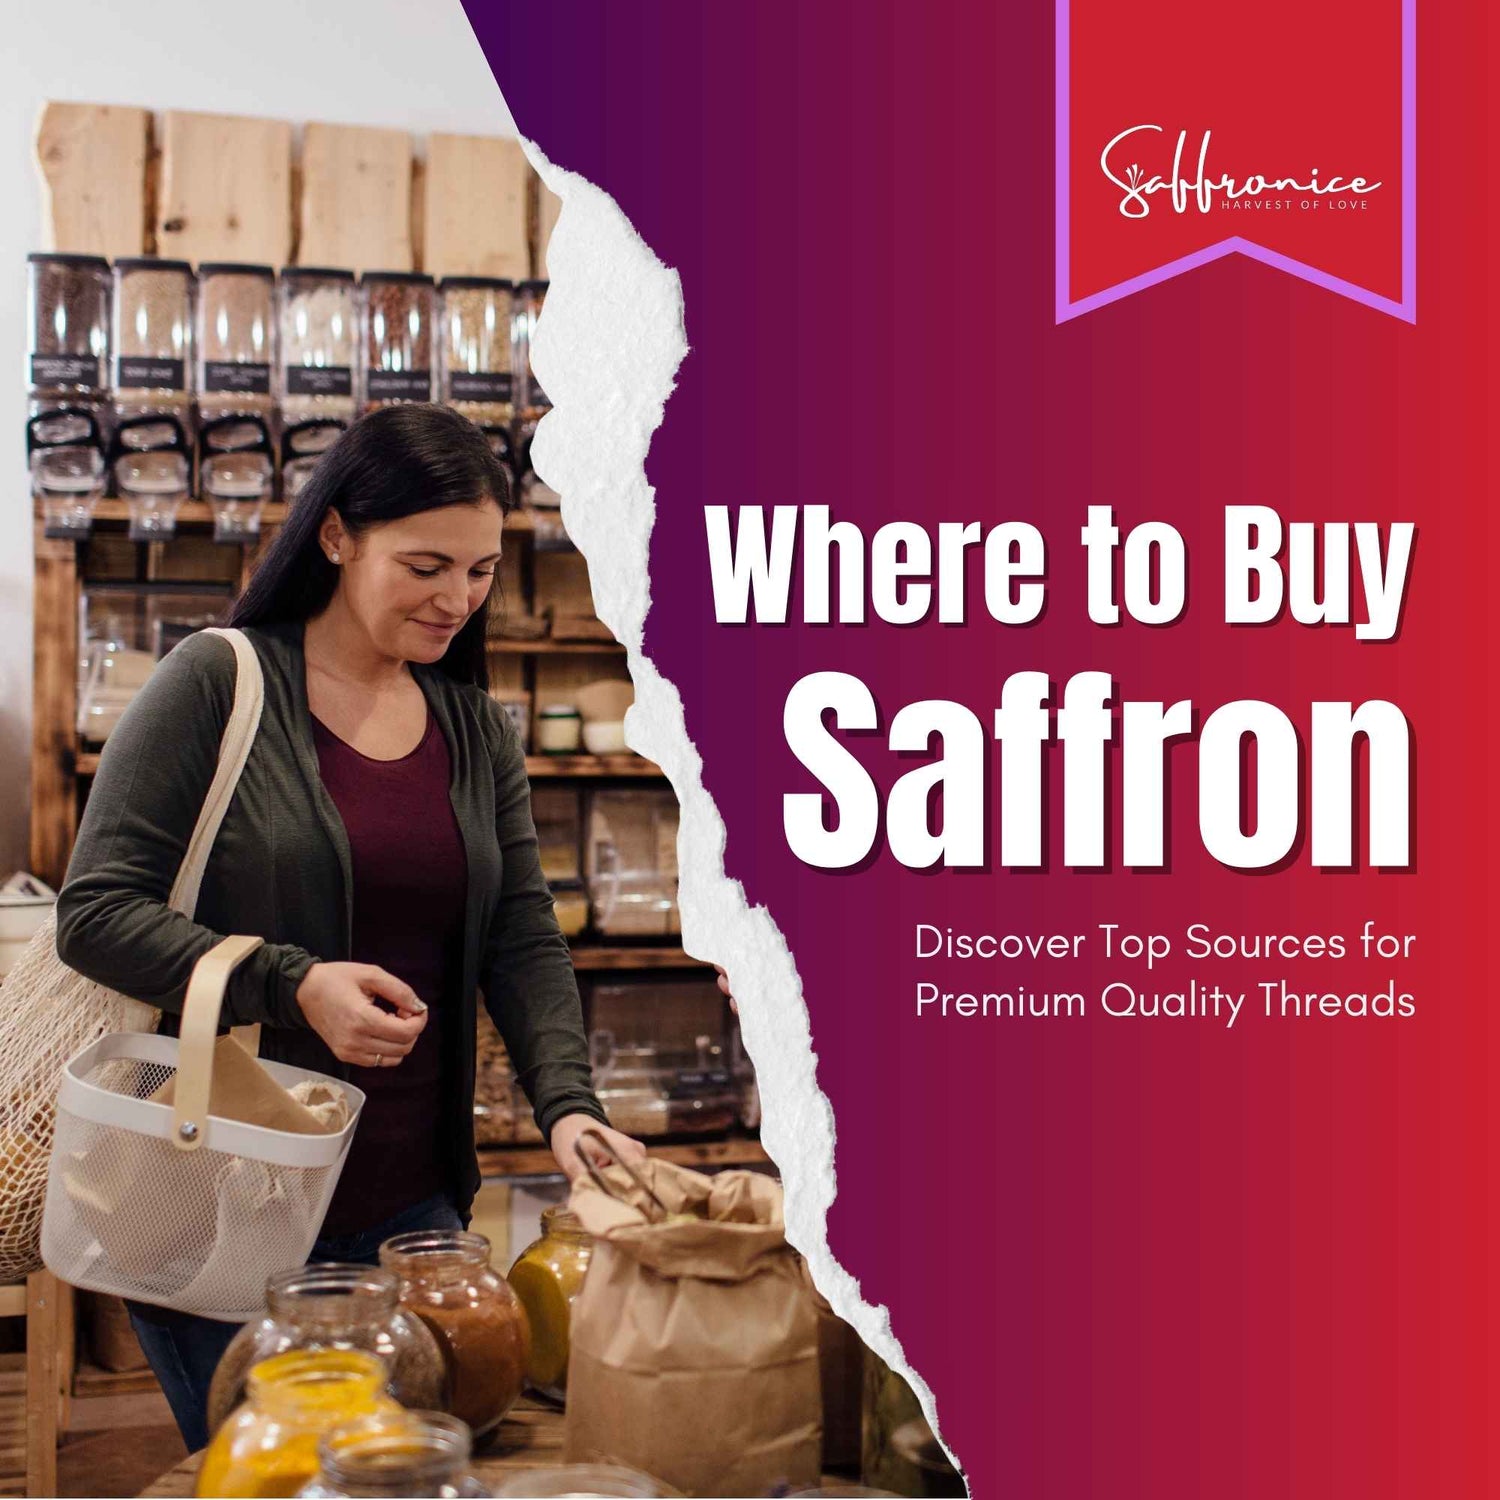 Where to Buy Saffron